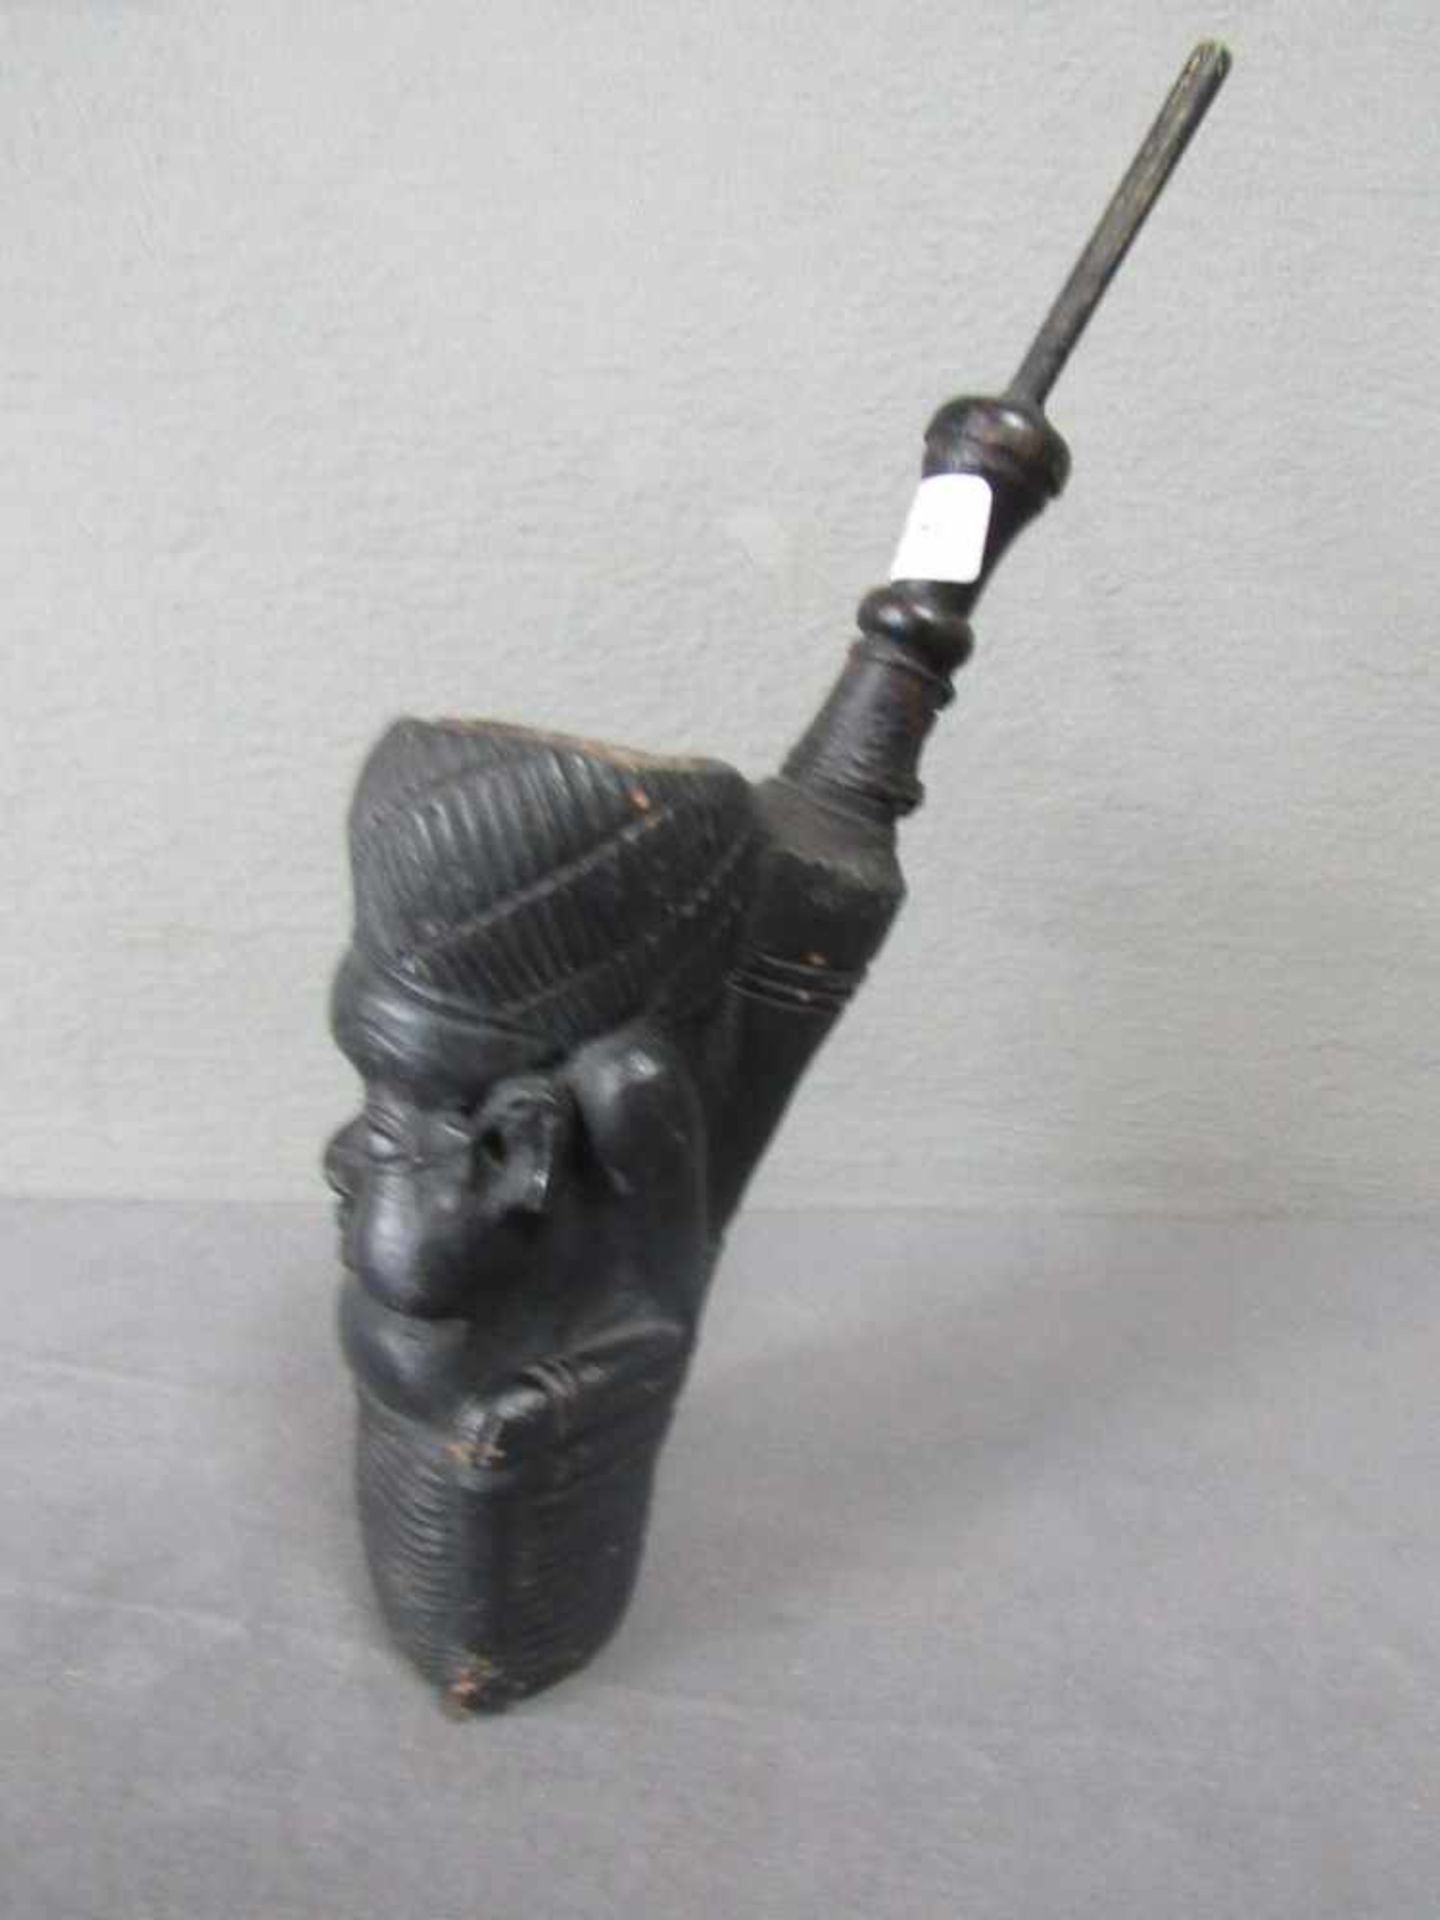 Antike afrikanische Pfeiffe um 1850 35cm hoch- - -20.00 % buyer's premium on the hammer price19.00 % - Bild 2 aus 3